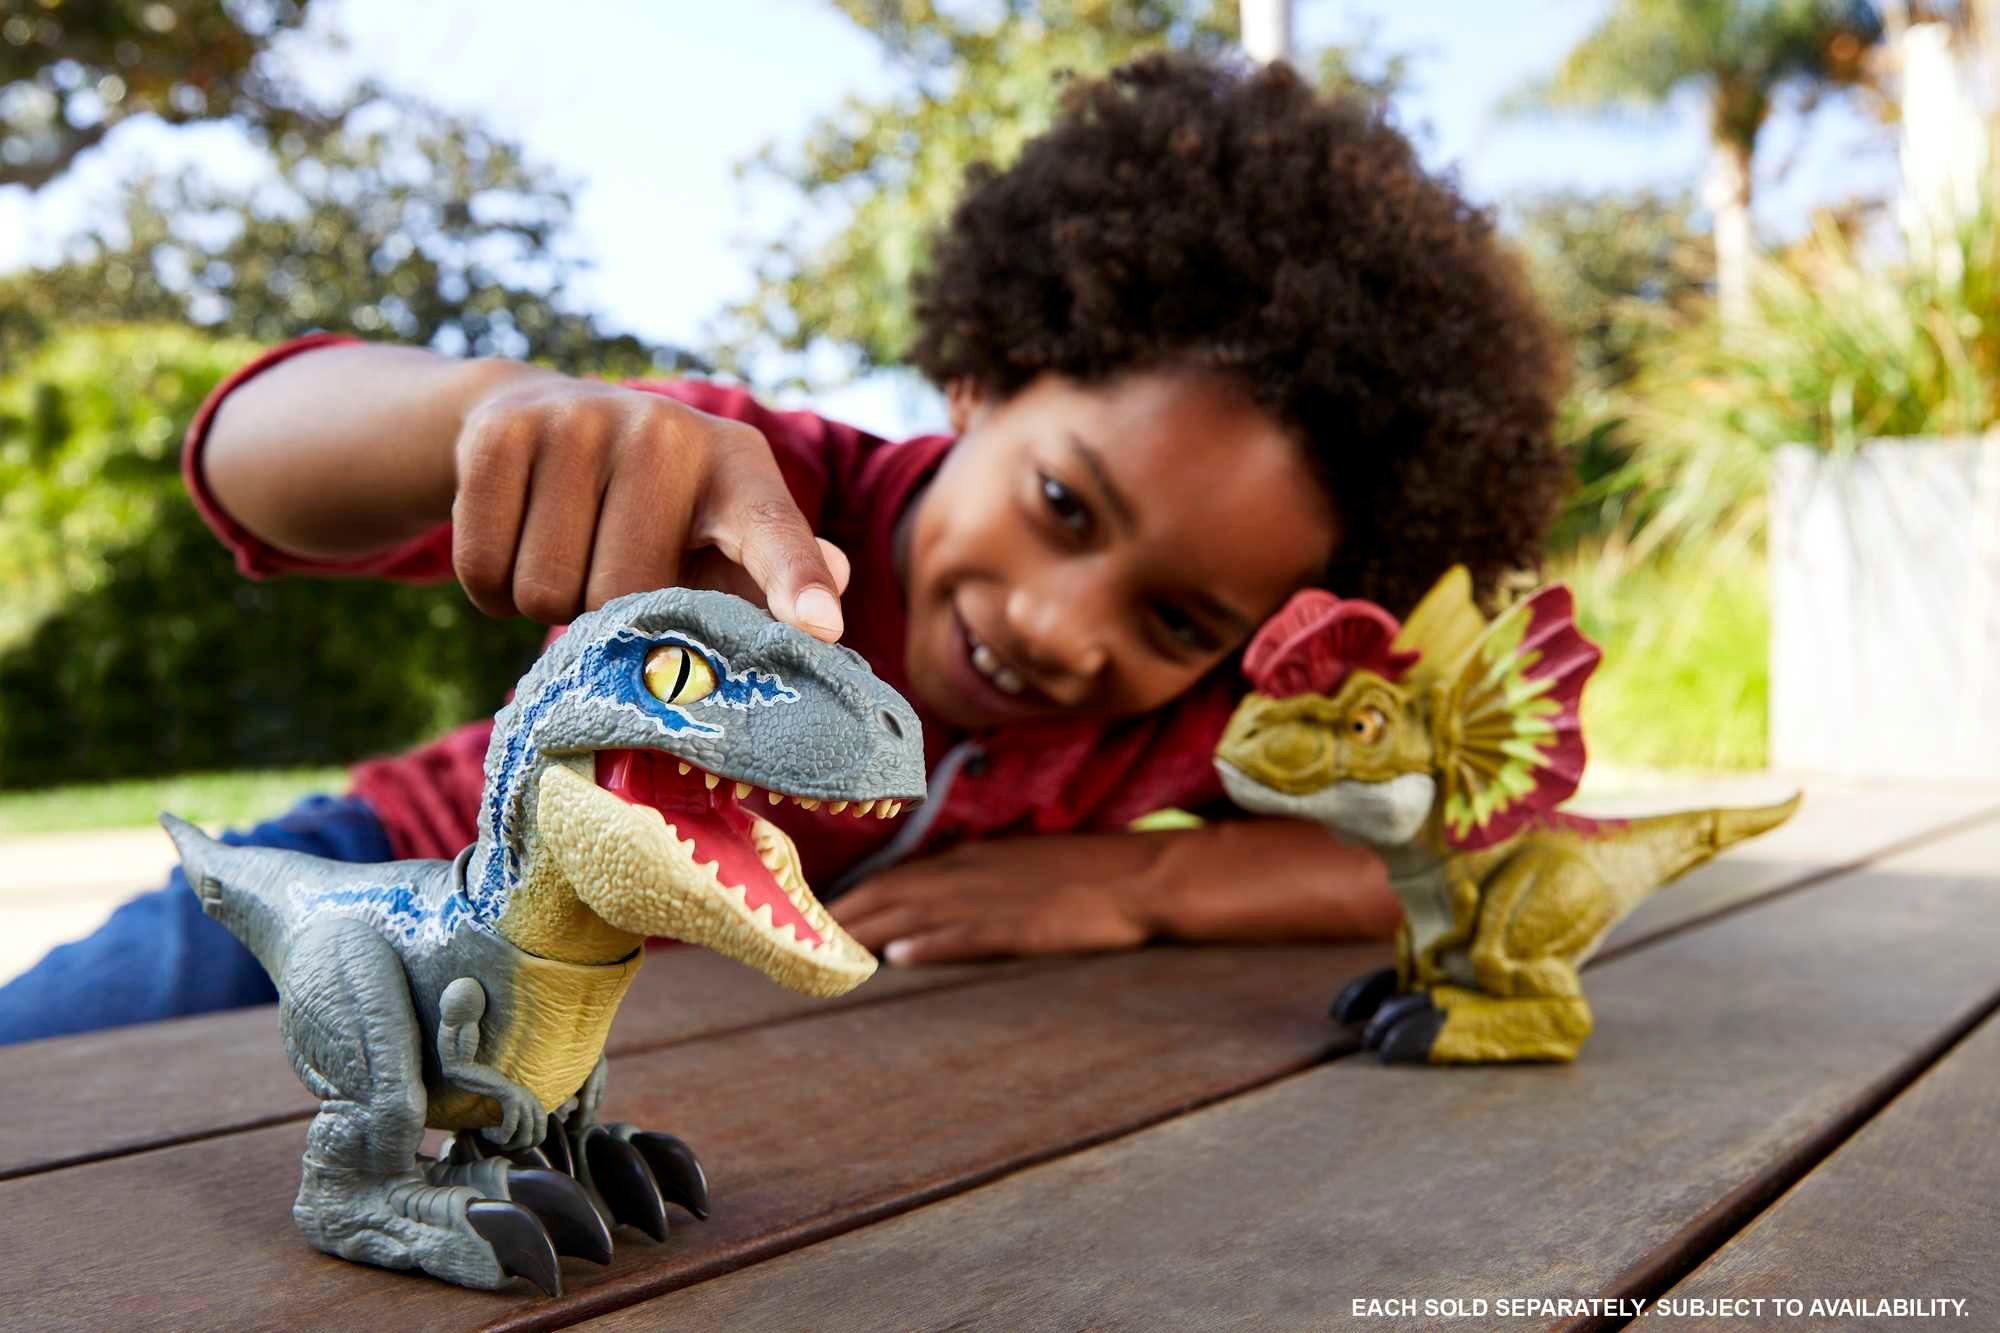 World Jurassic Mattel® Jurassic Roars Spielfigur World Rowdy Mattel Mirror Uncaged Dino